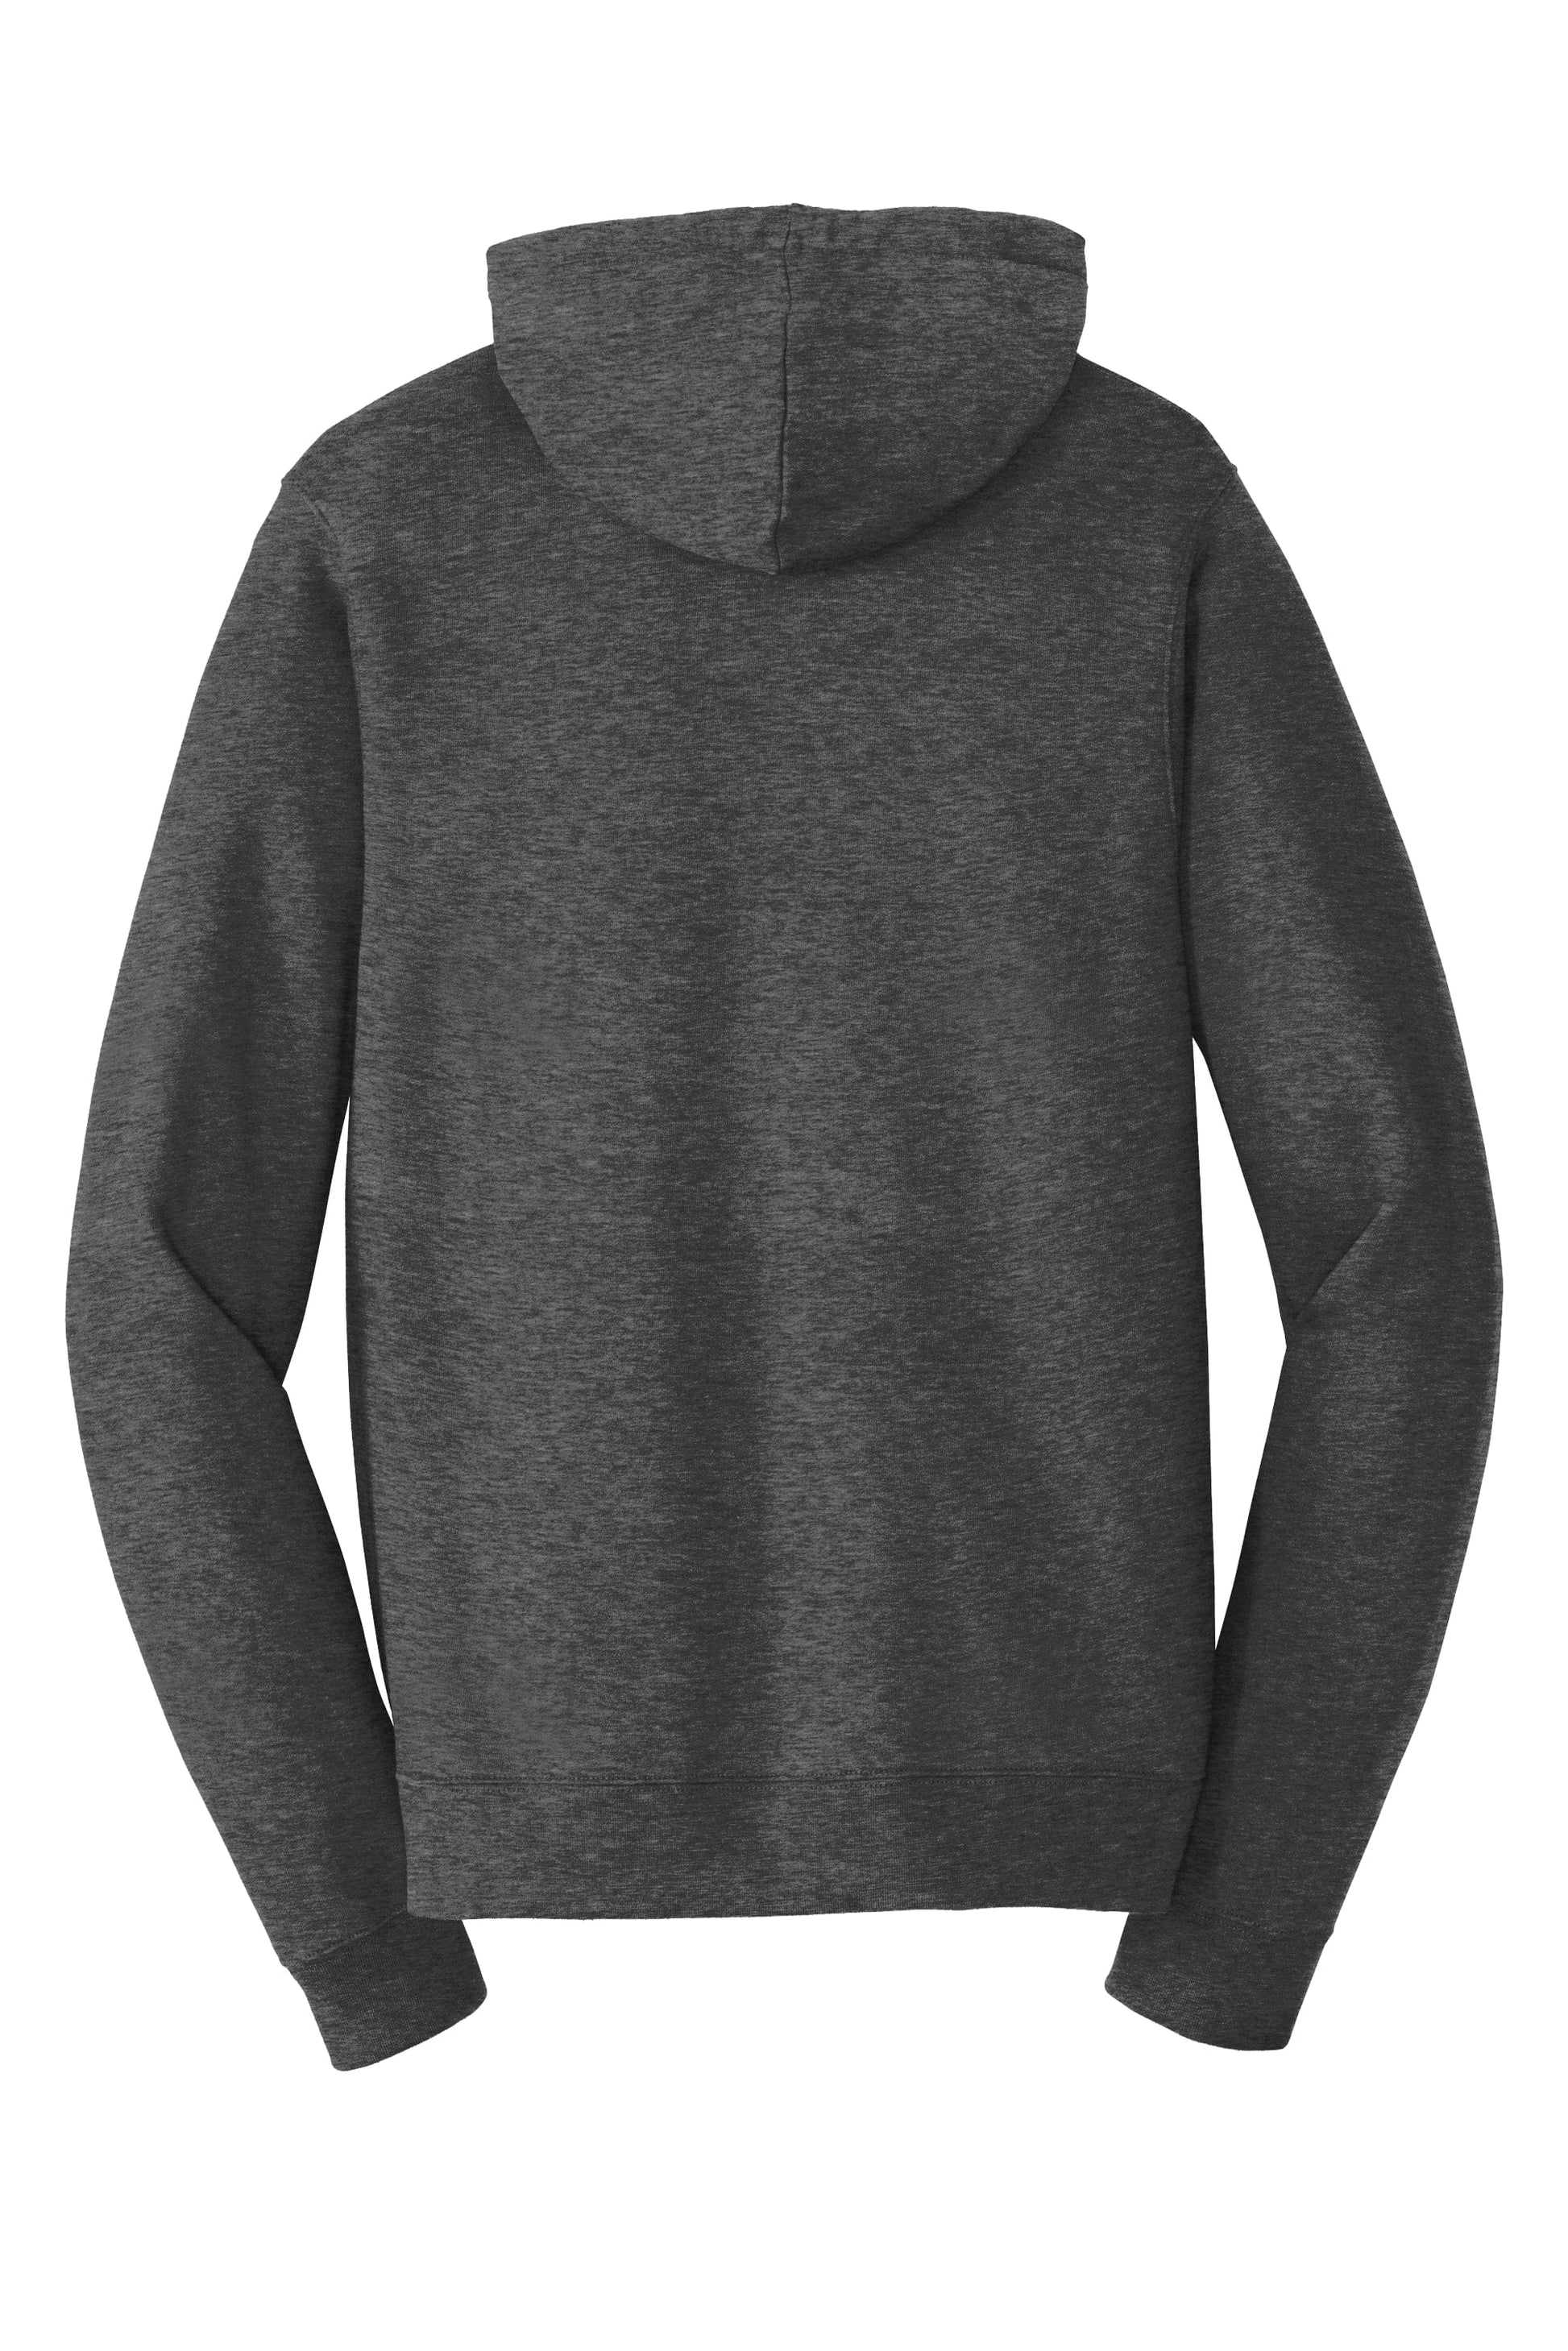 FORtheFIT mens-short-jacket Short Men's Premium Fleece Pullover Hoodie Sweatshirt  - Navy & Heathered Gray